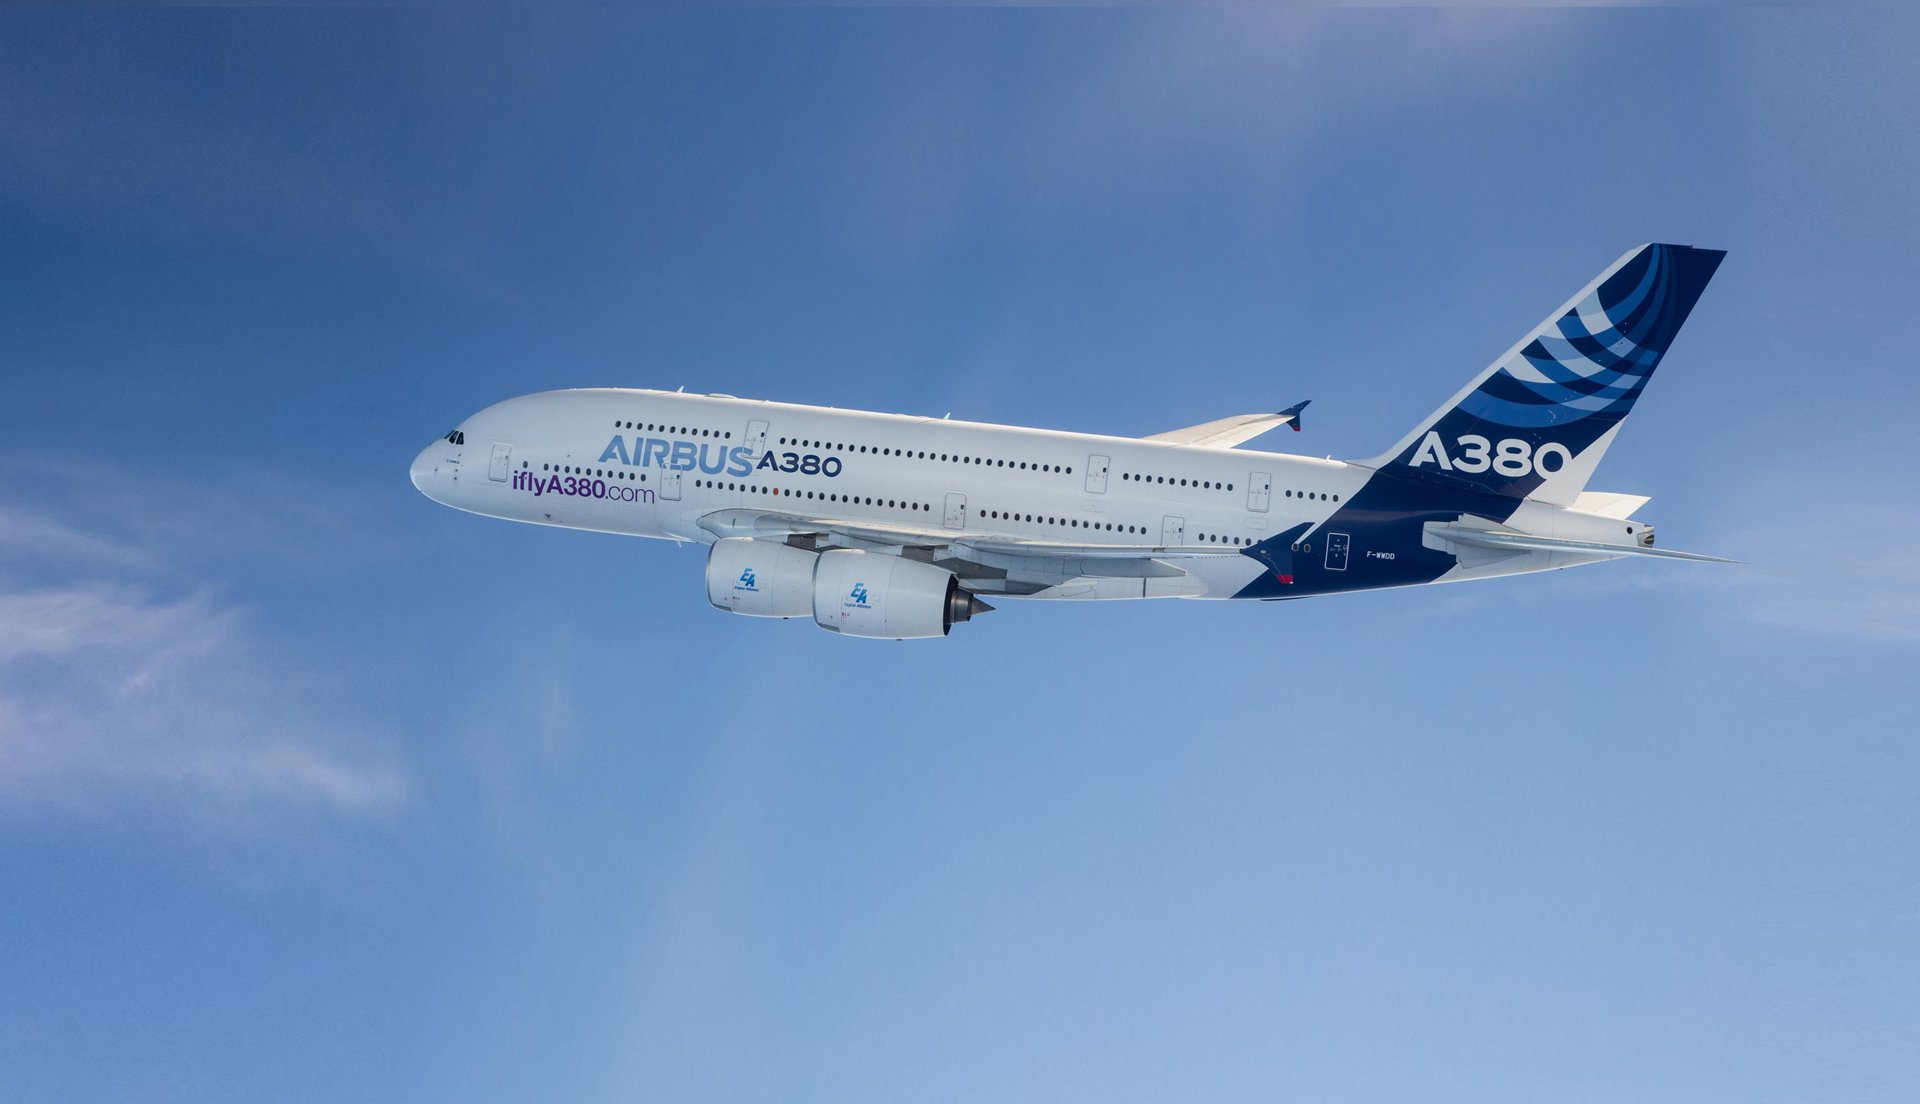 Resultado de imagen para Airbus A380 takeoff